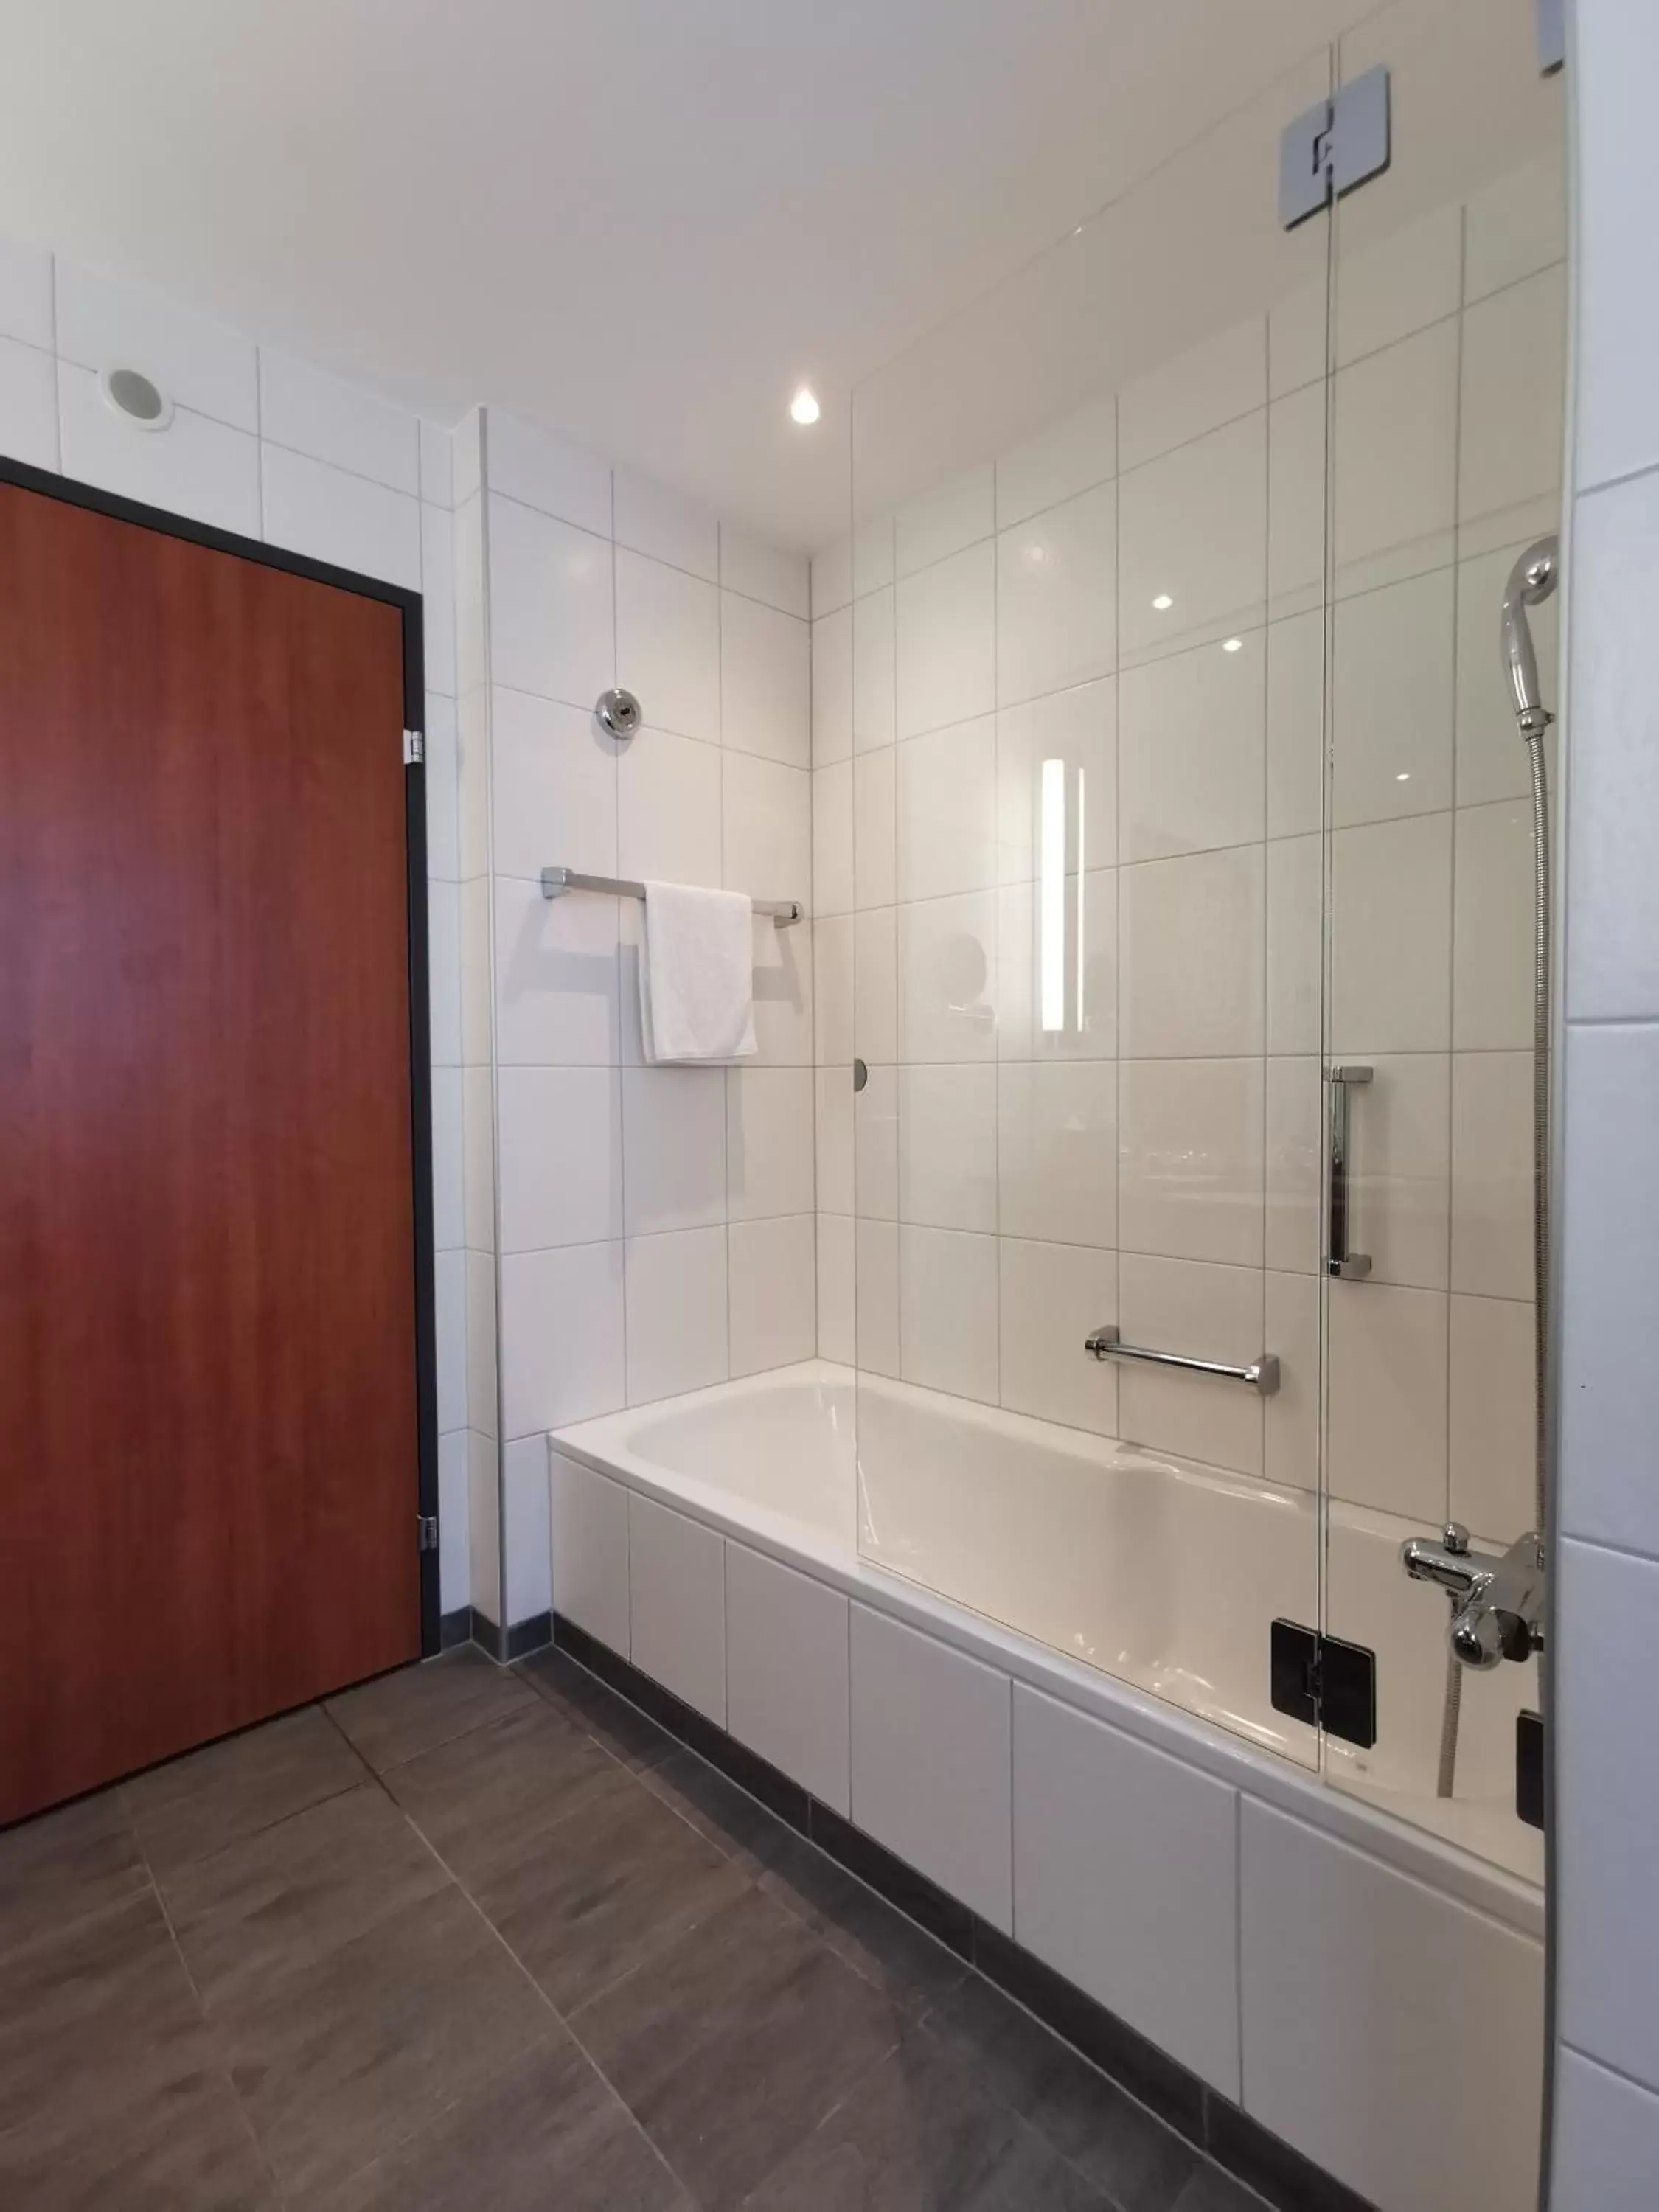 Shower, Bathroom in Radisson Blu Hotel, St. Gallen